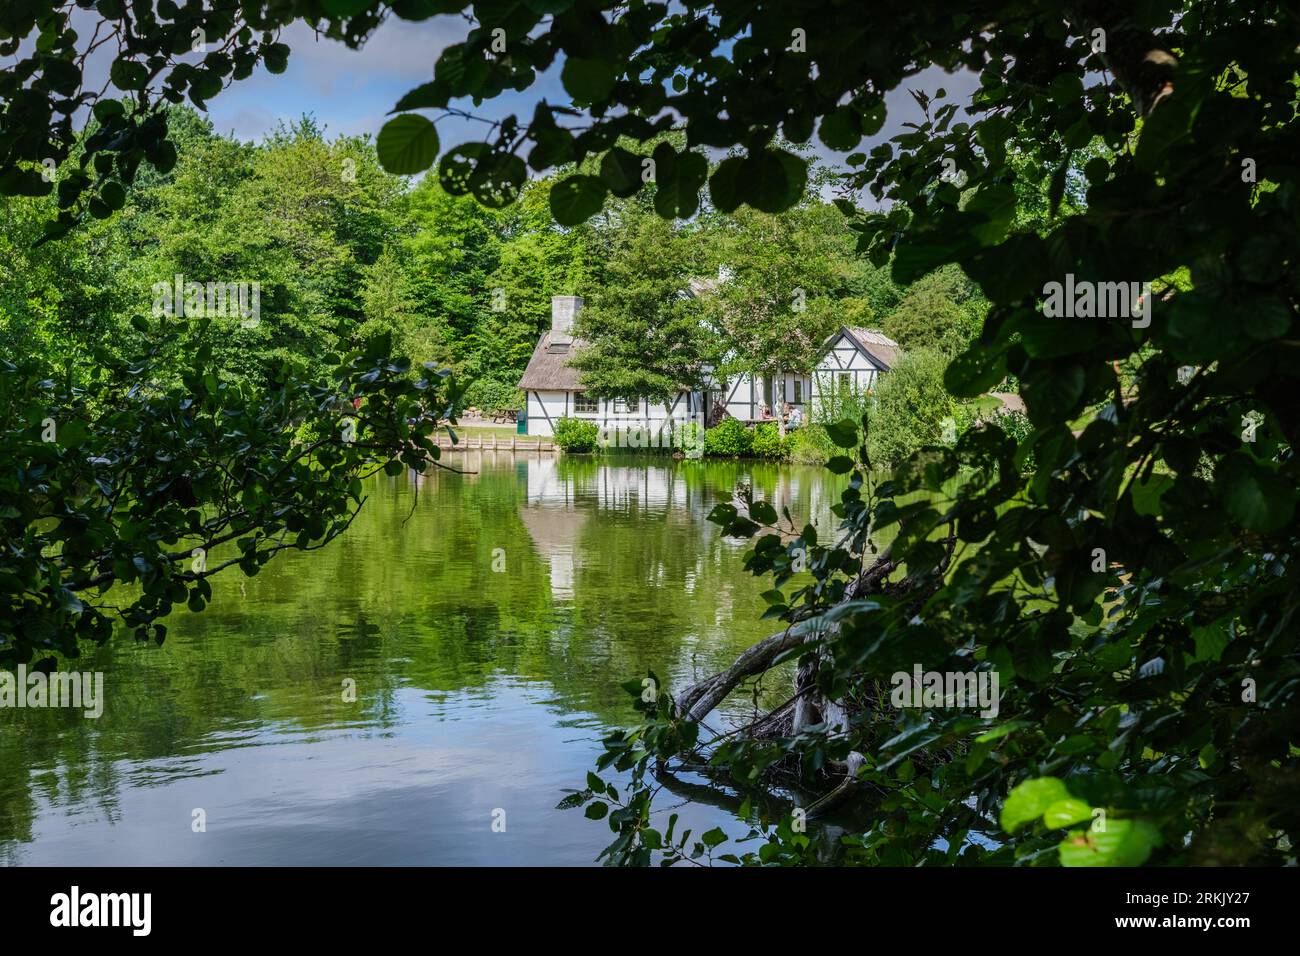 Schönes und ansprechendes Ferienhaus an einem See, durch Baumblätter gesehen. Stockfoto